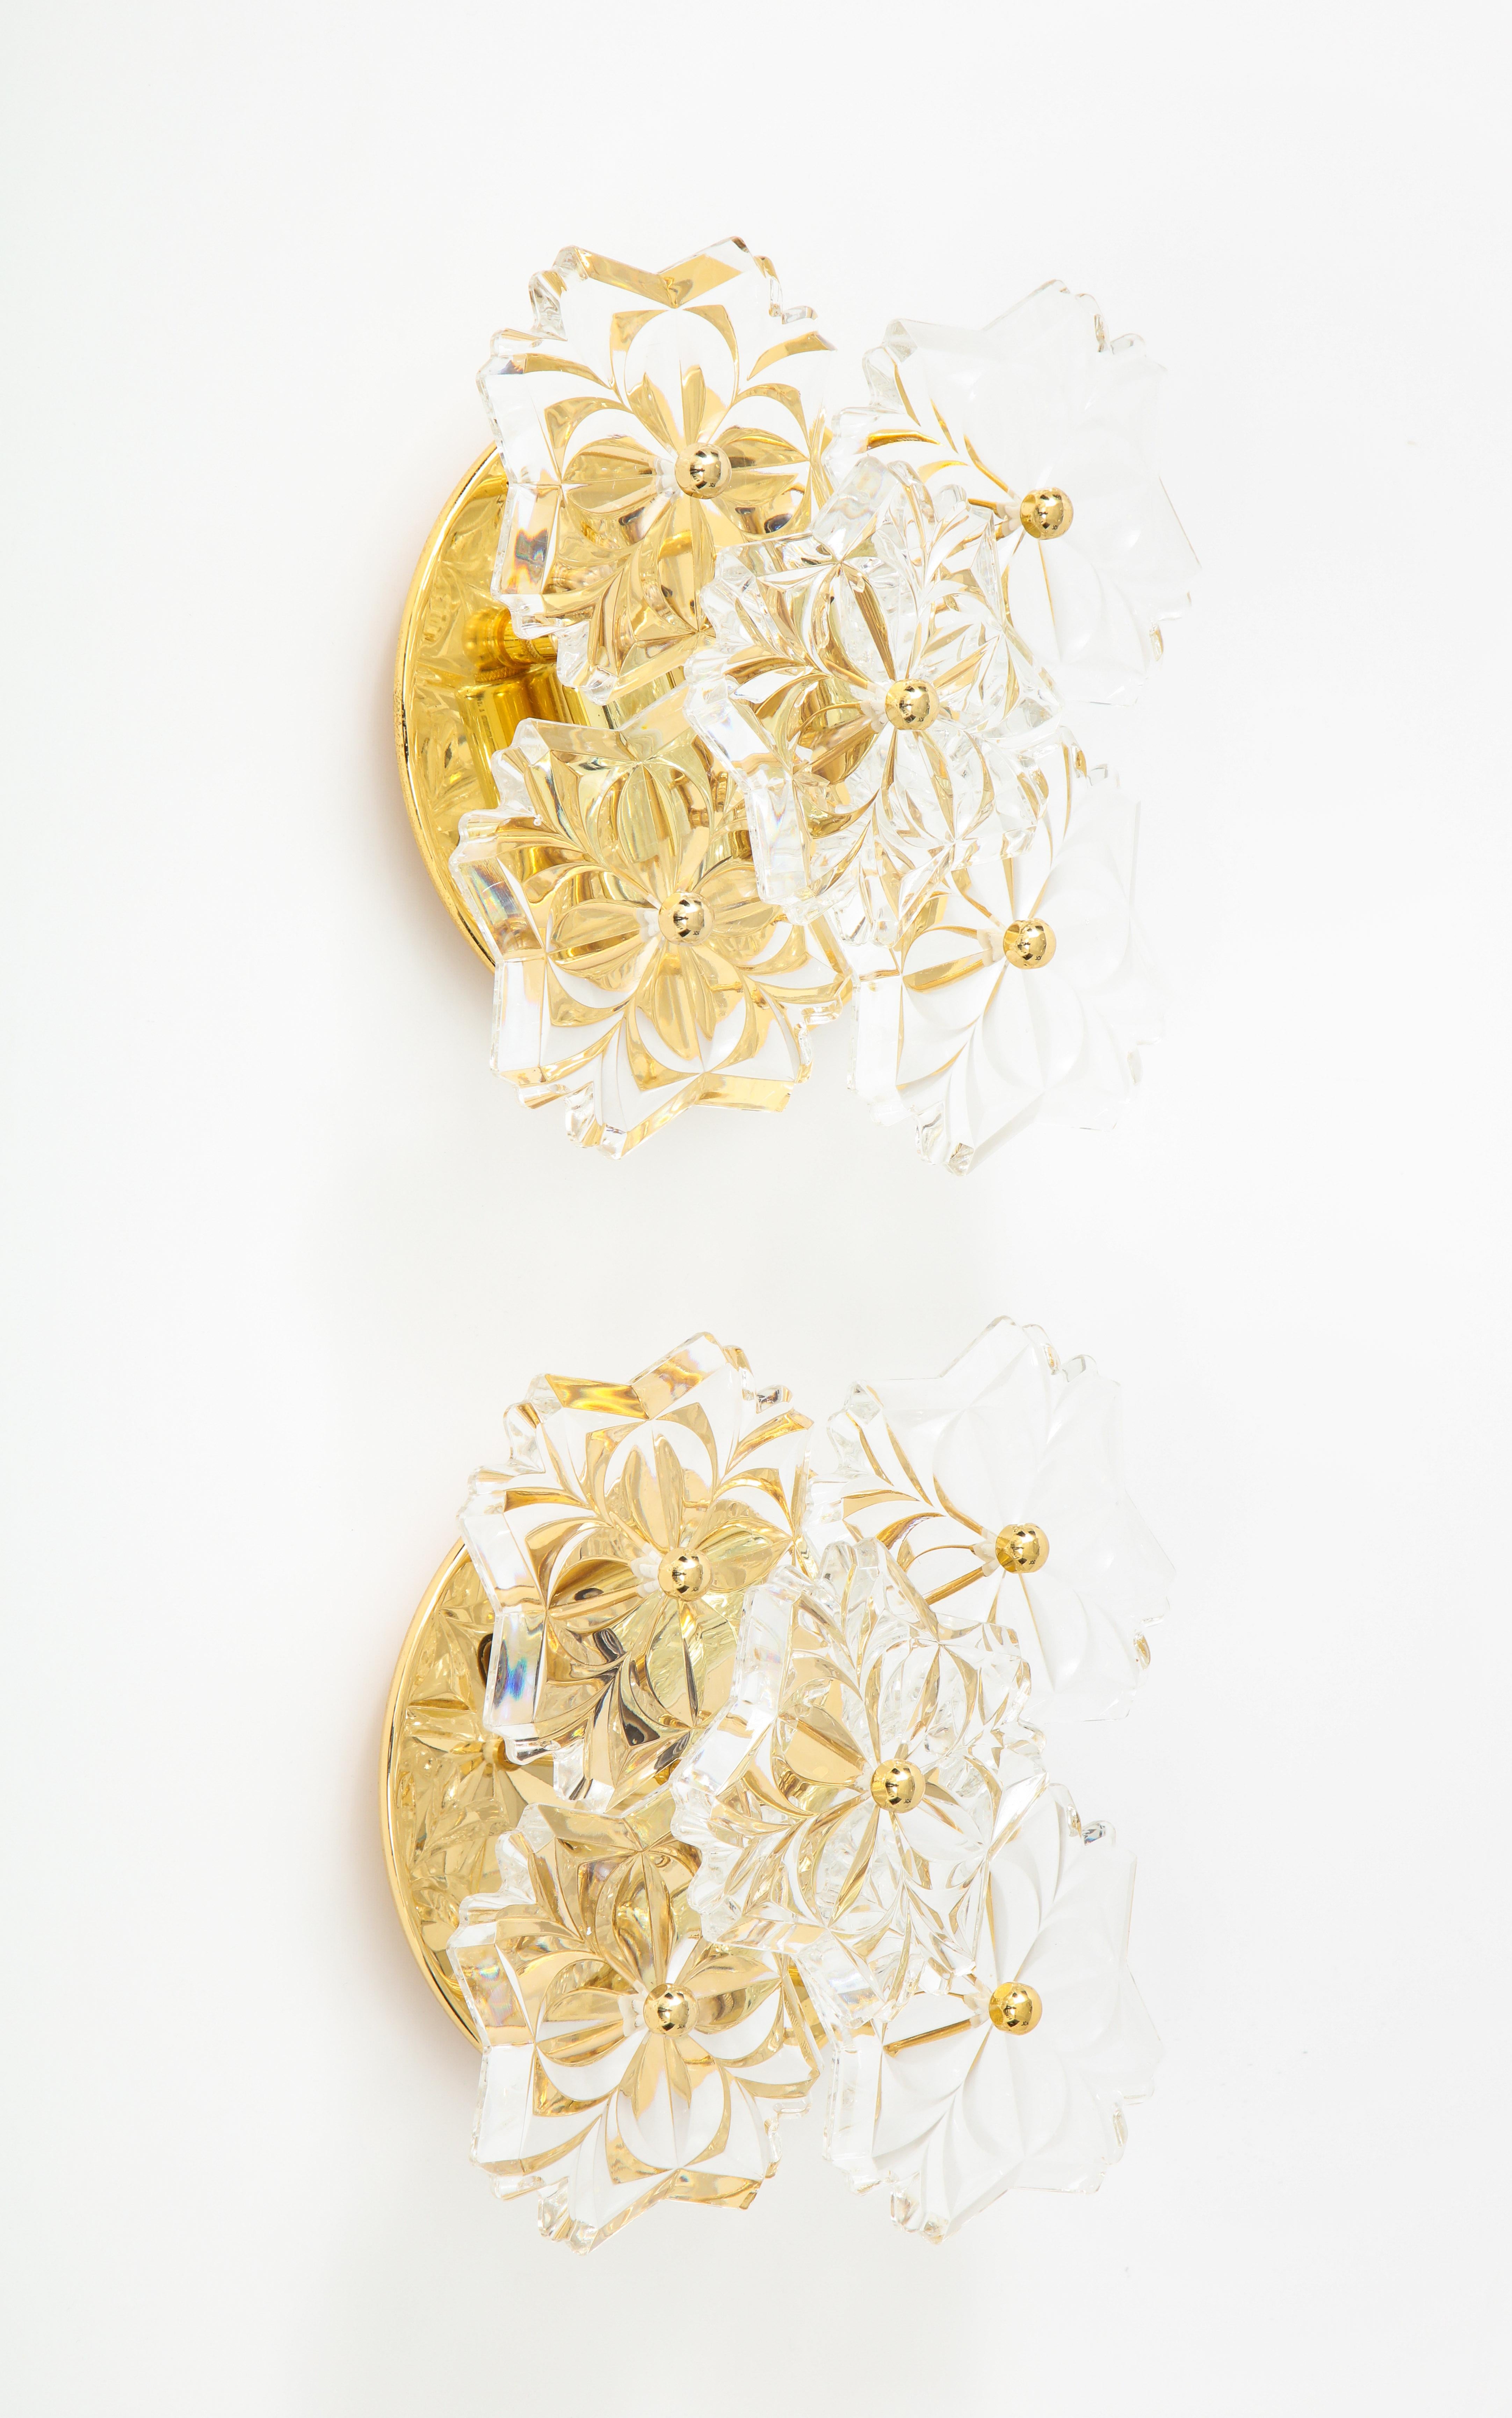 Zwei 1960er-Jahre-Wandleuchter aus Kristall von Kinkeldey.
Die Armaturen sind aus 22 Karat vergoldetem Messing und tragen 5 Kristallelemente.
Sie wurden für die USA mit Kandelaberfassungen neu verkabelt.